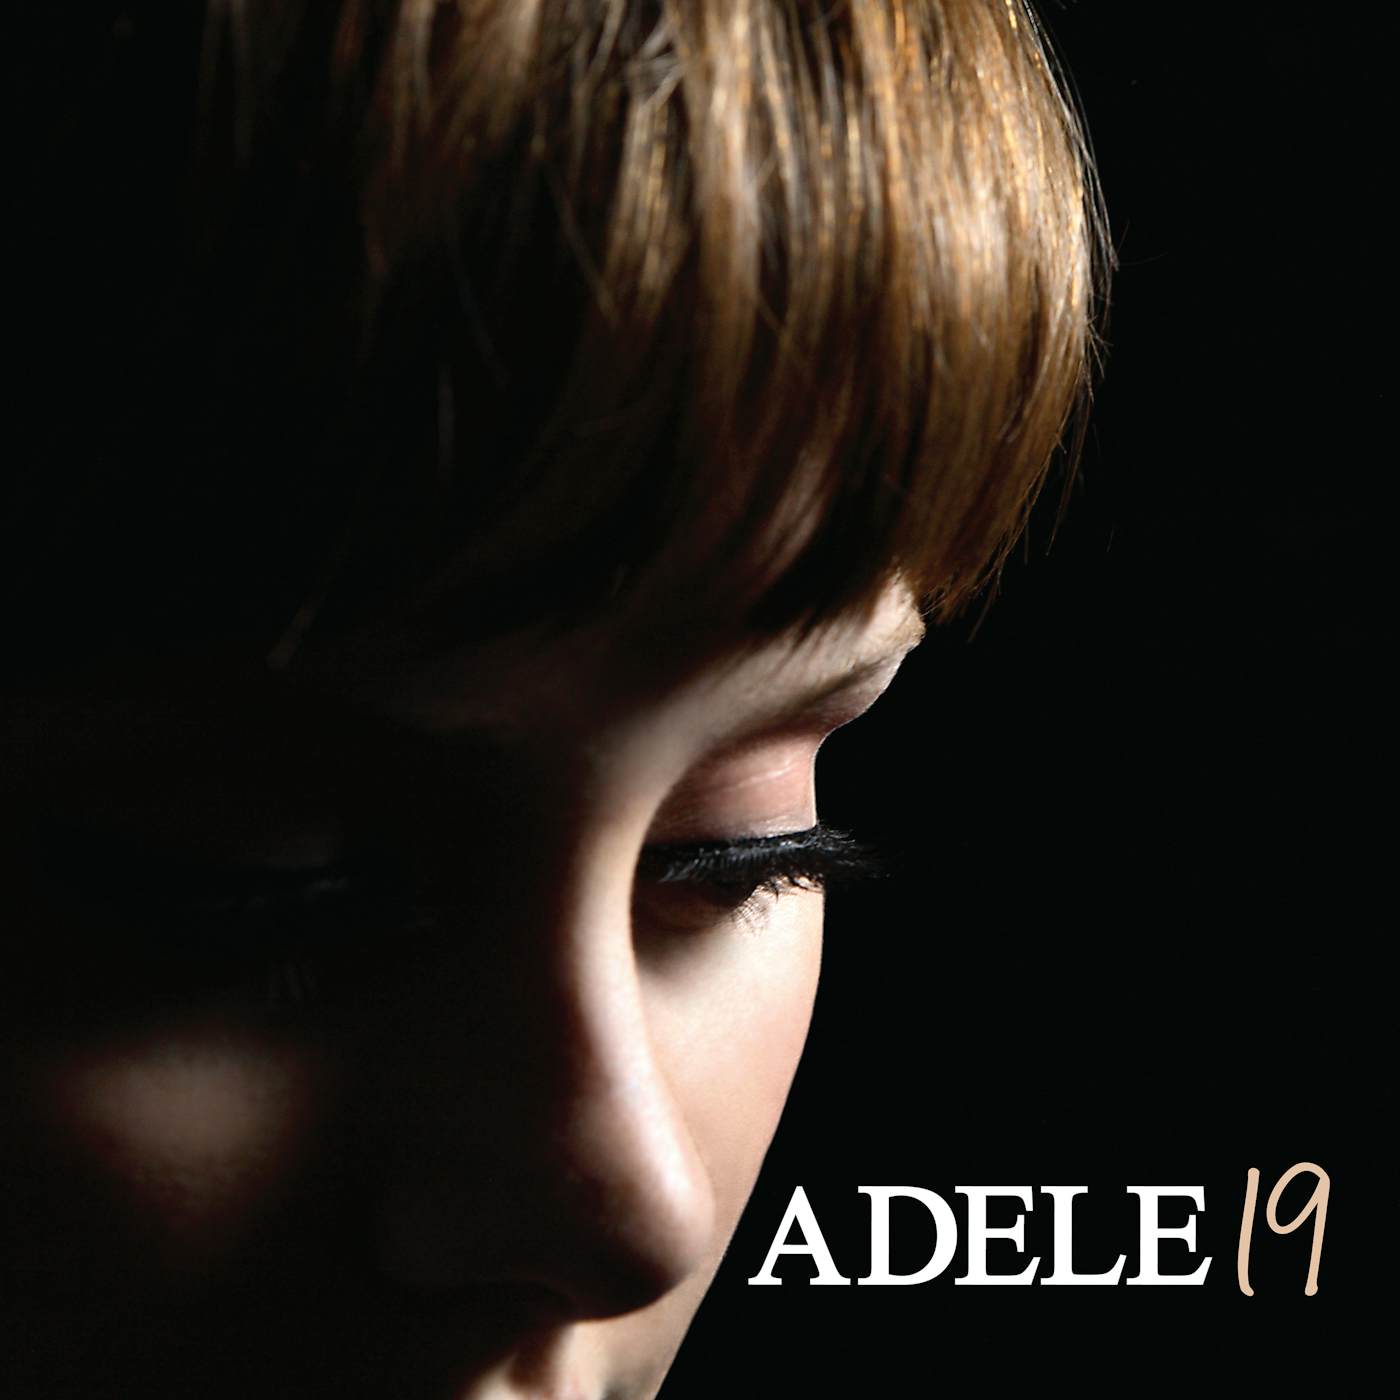 Adele 19 CD